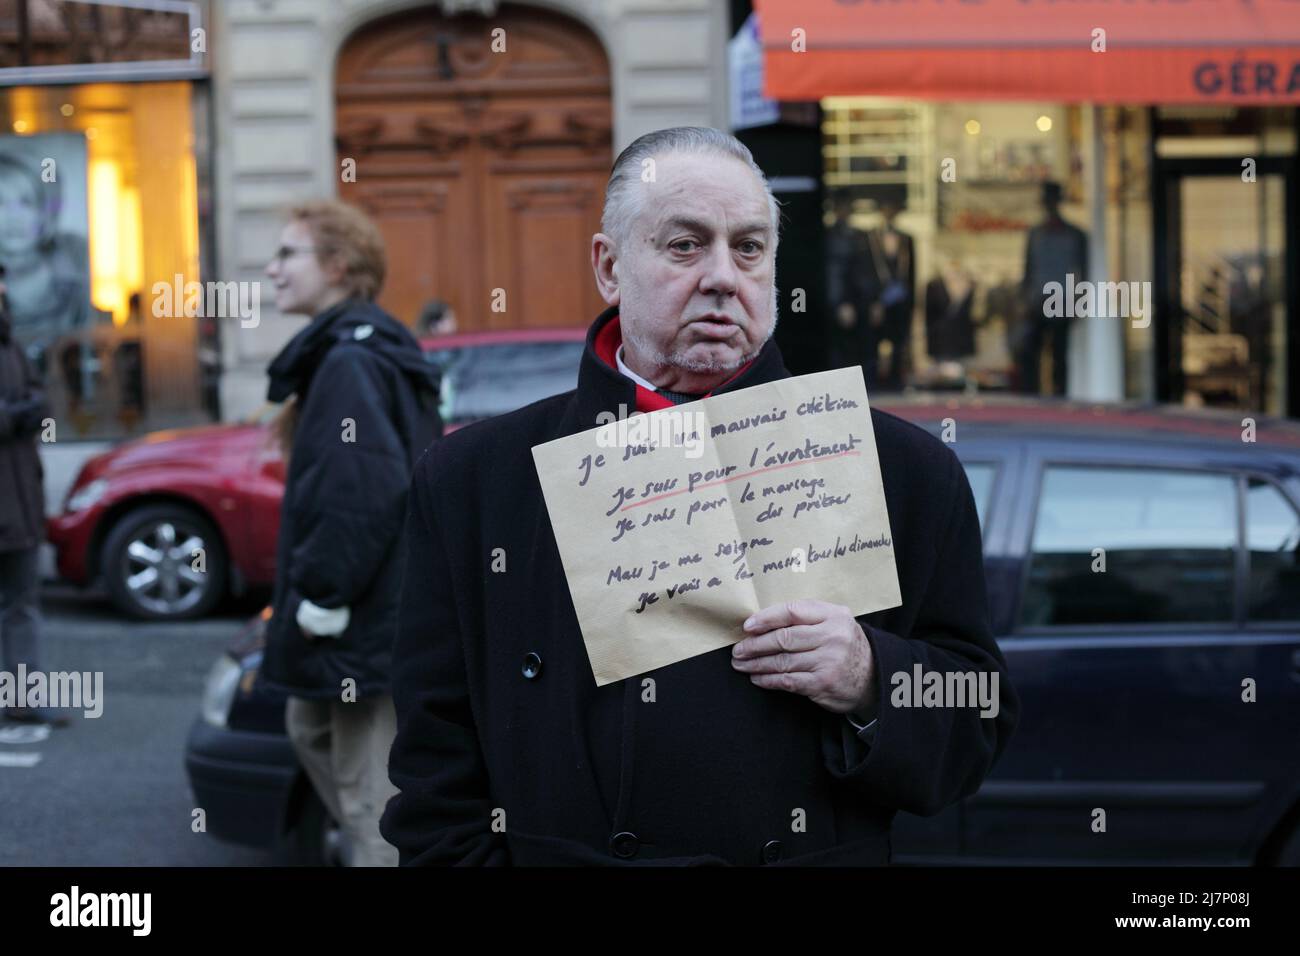 Paris : Manifestation contre le projet de loi anti-avortement en Espagne 01er février 2014. Portrait d'un homme âgé à pancarte 'je suis un mauvais... Stockfoto